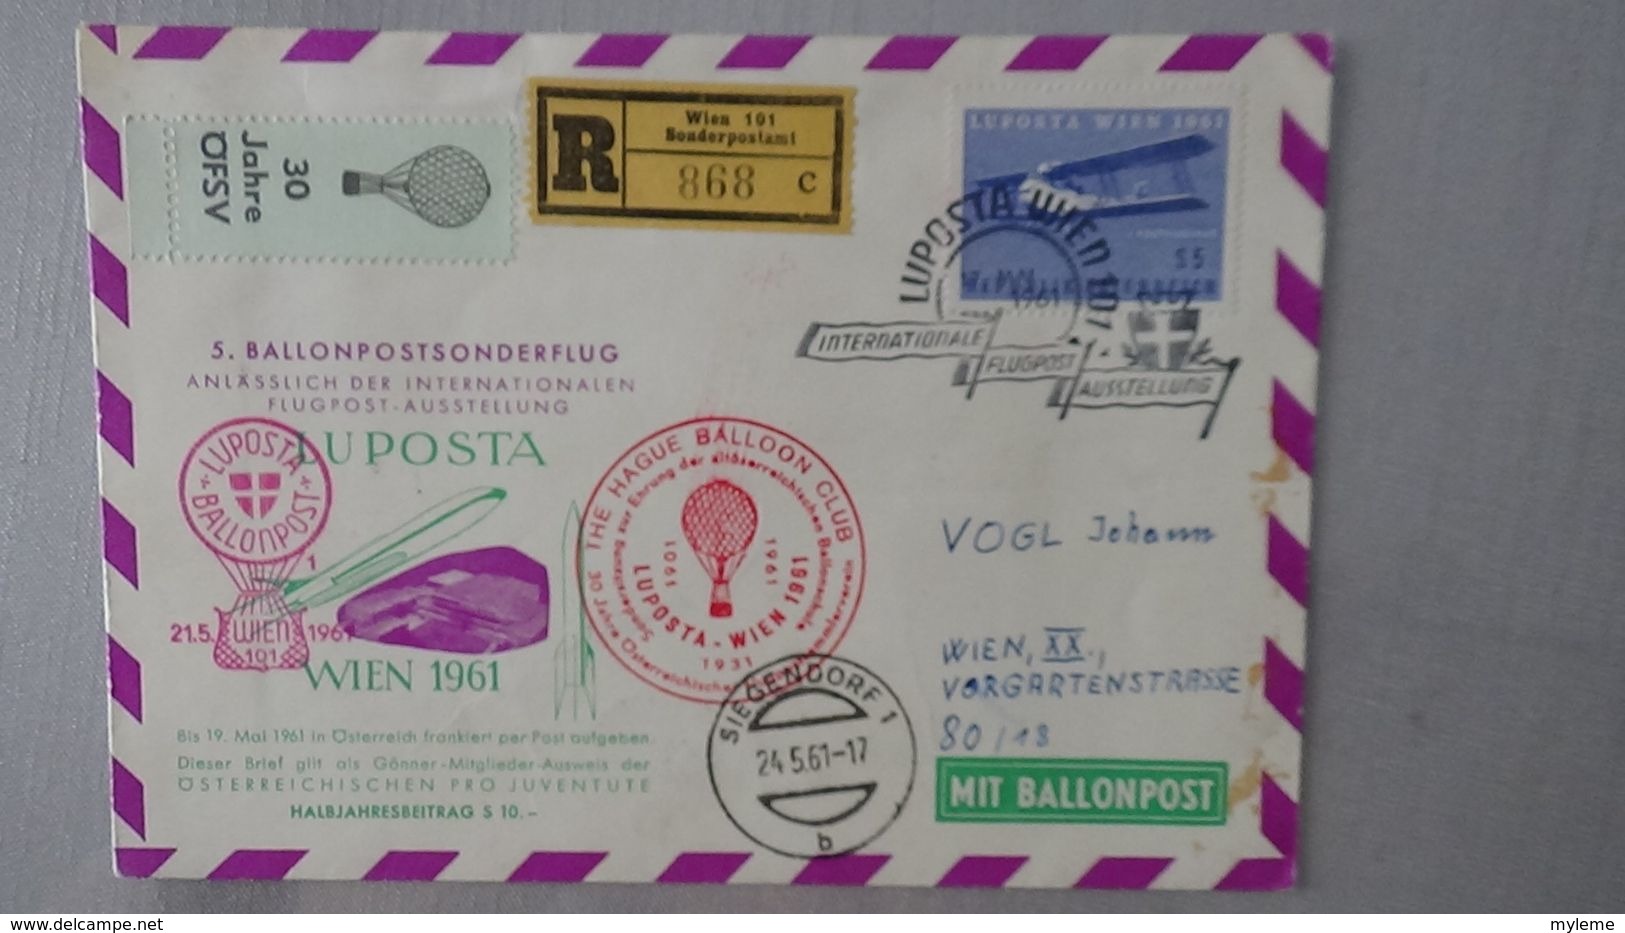 G120 Carton 27 kgs de plusieurs centaines de cartes postales, courrier dont Europa, aviation .....Voir commentaires !!!